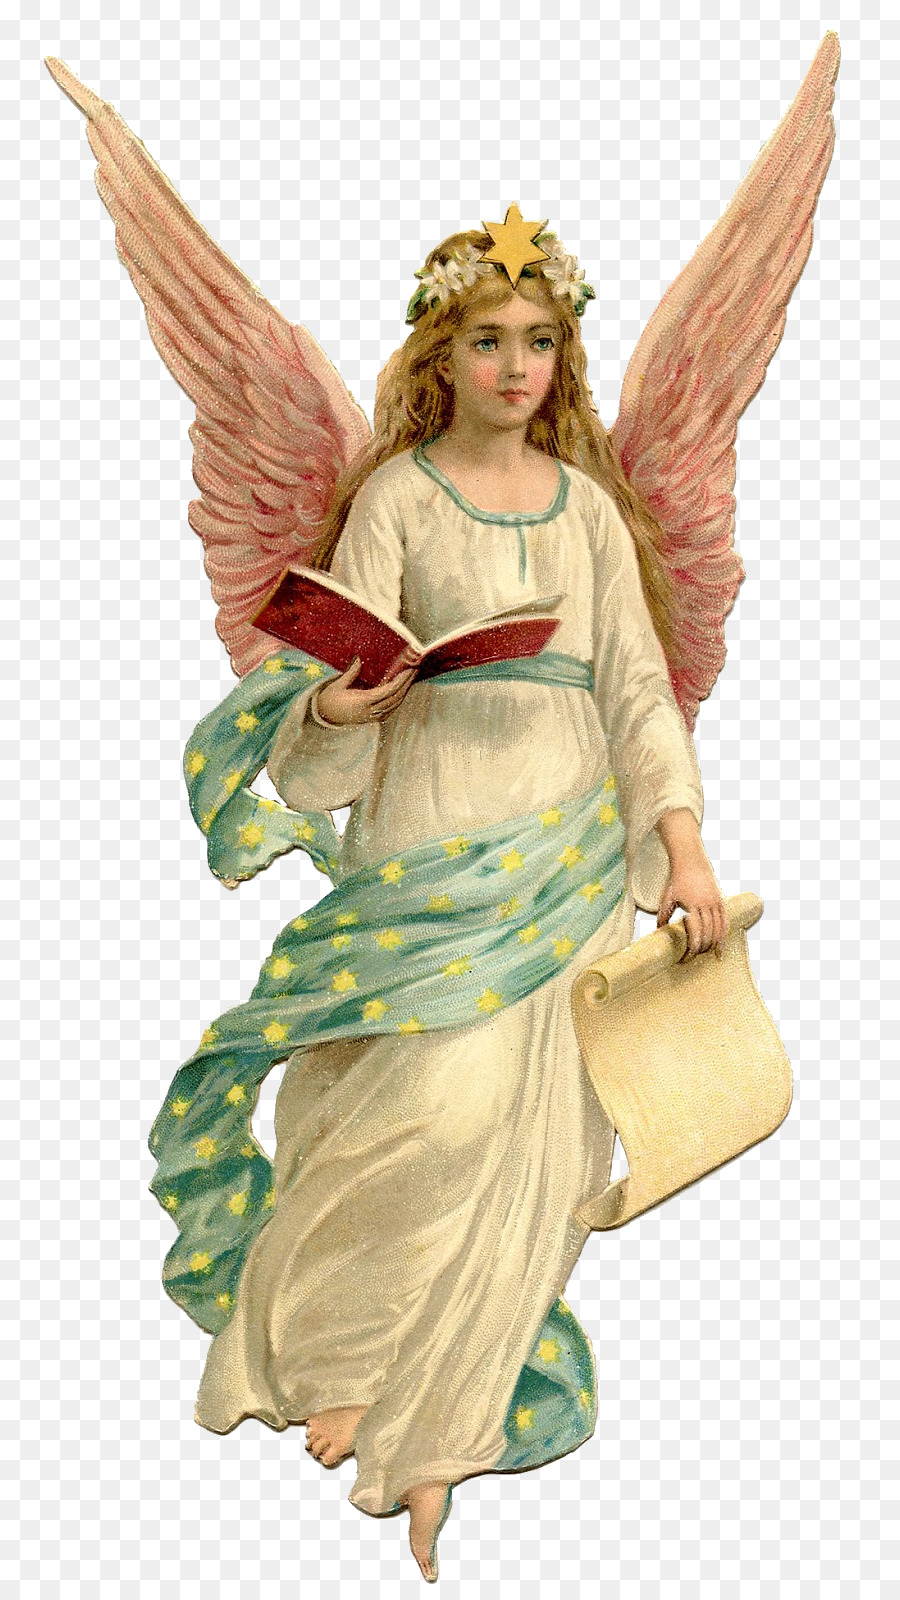 Angel Clip art - angel png download - 880*1600 - Free Transparent Angel png Download.